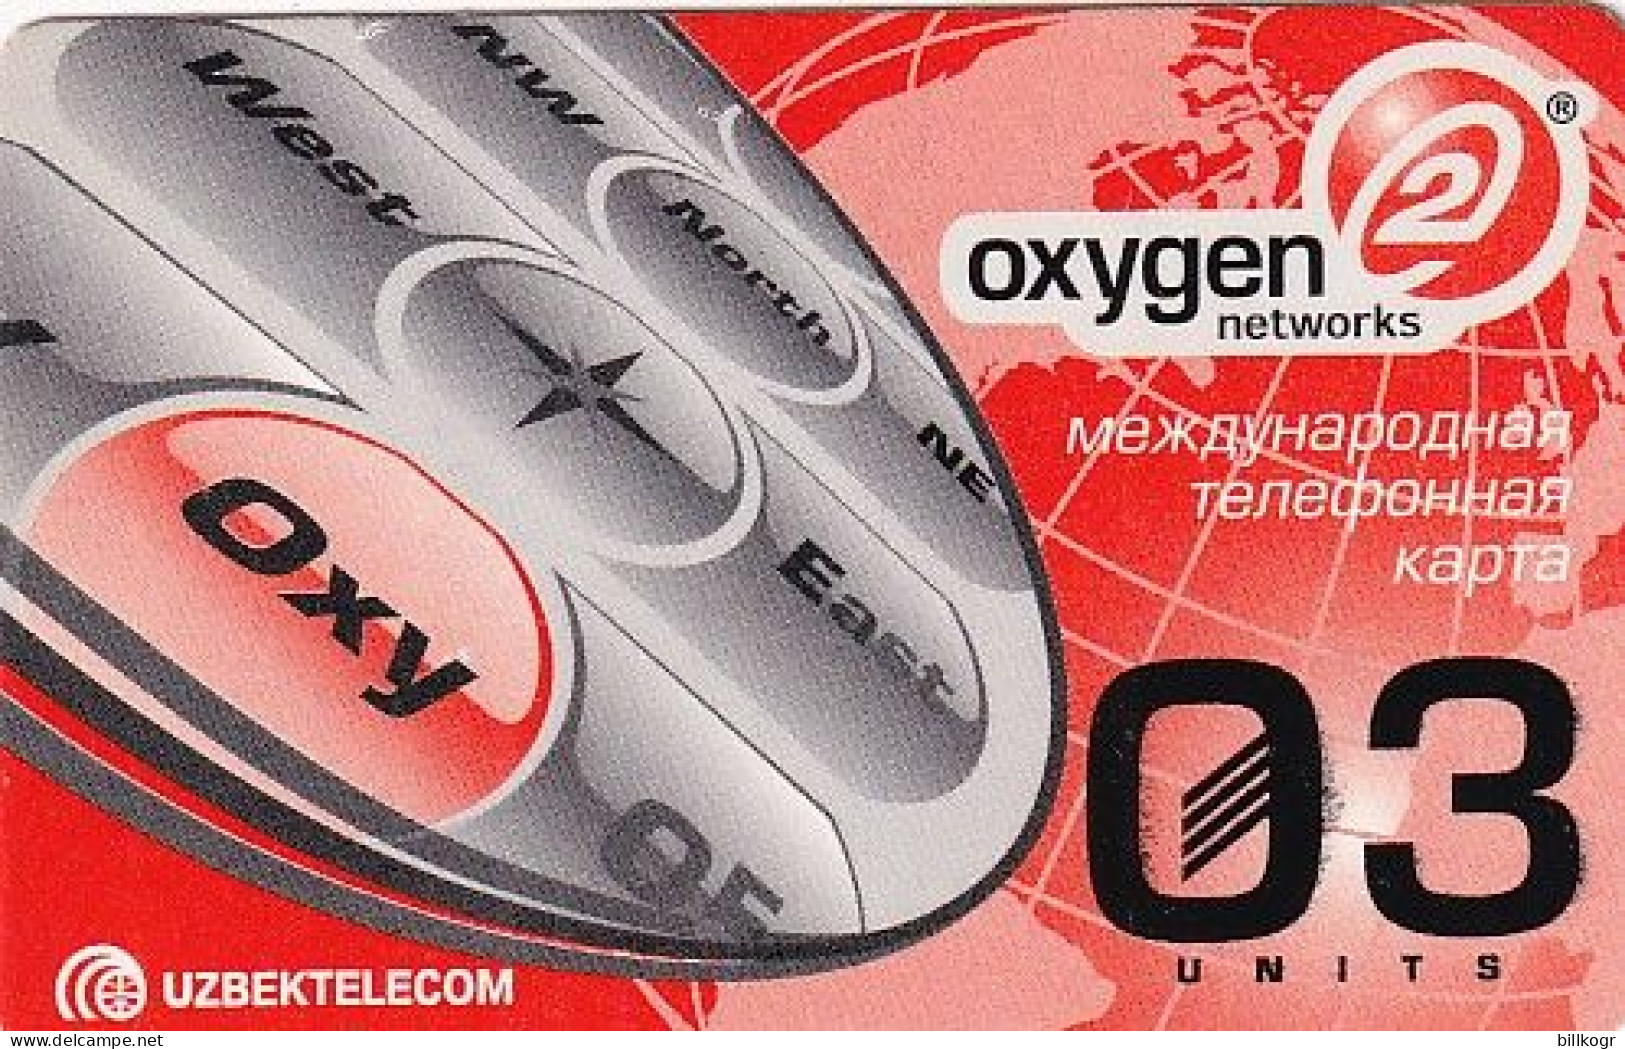 UZBEKISTAN - Oxygen 2 Networks, Uzbek Telecom Prepaid Card 03 Units, Used - Uzbekistán